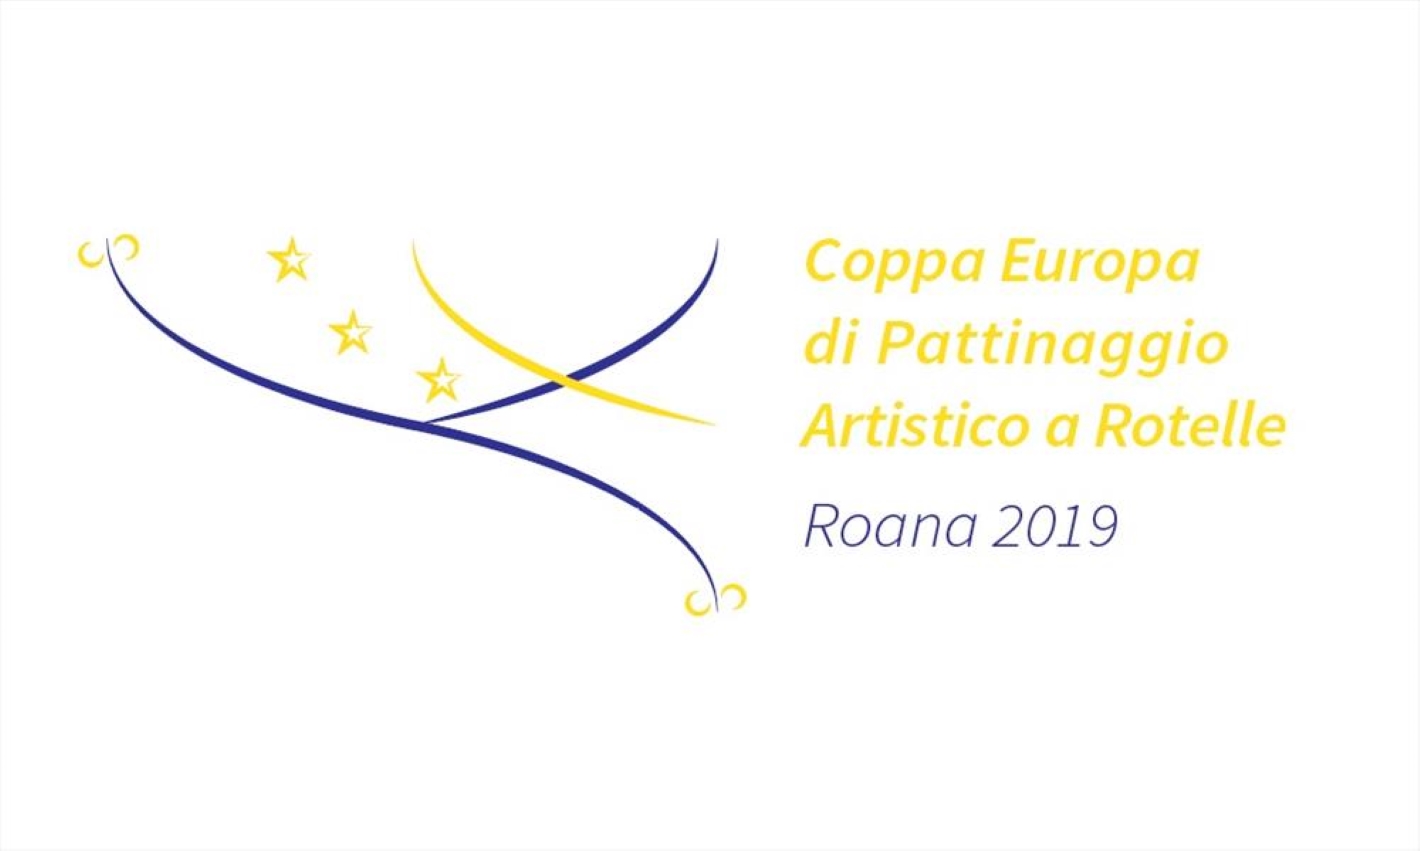 images/Coppa_Europa_di_Pattinaggio_Artistico_a_Rotelle_-_Roana_2019.jpg